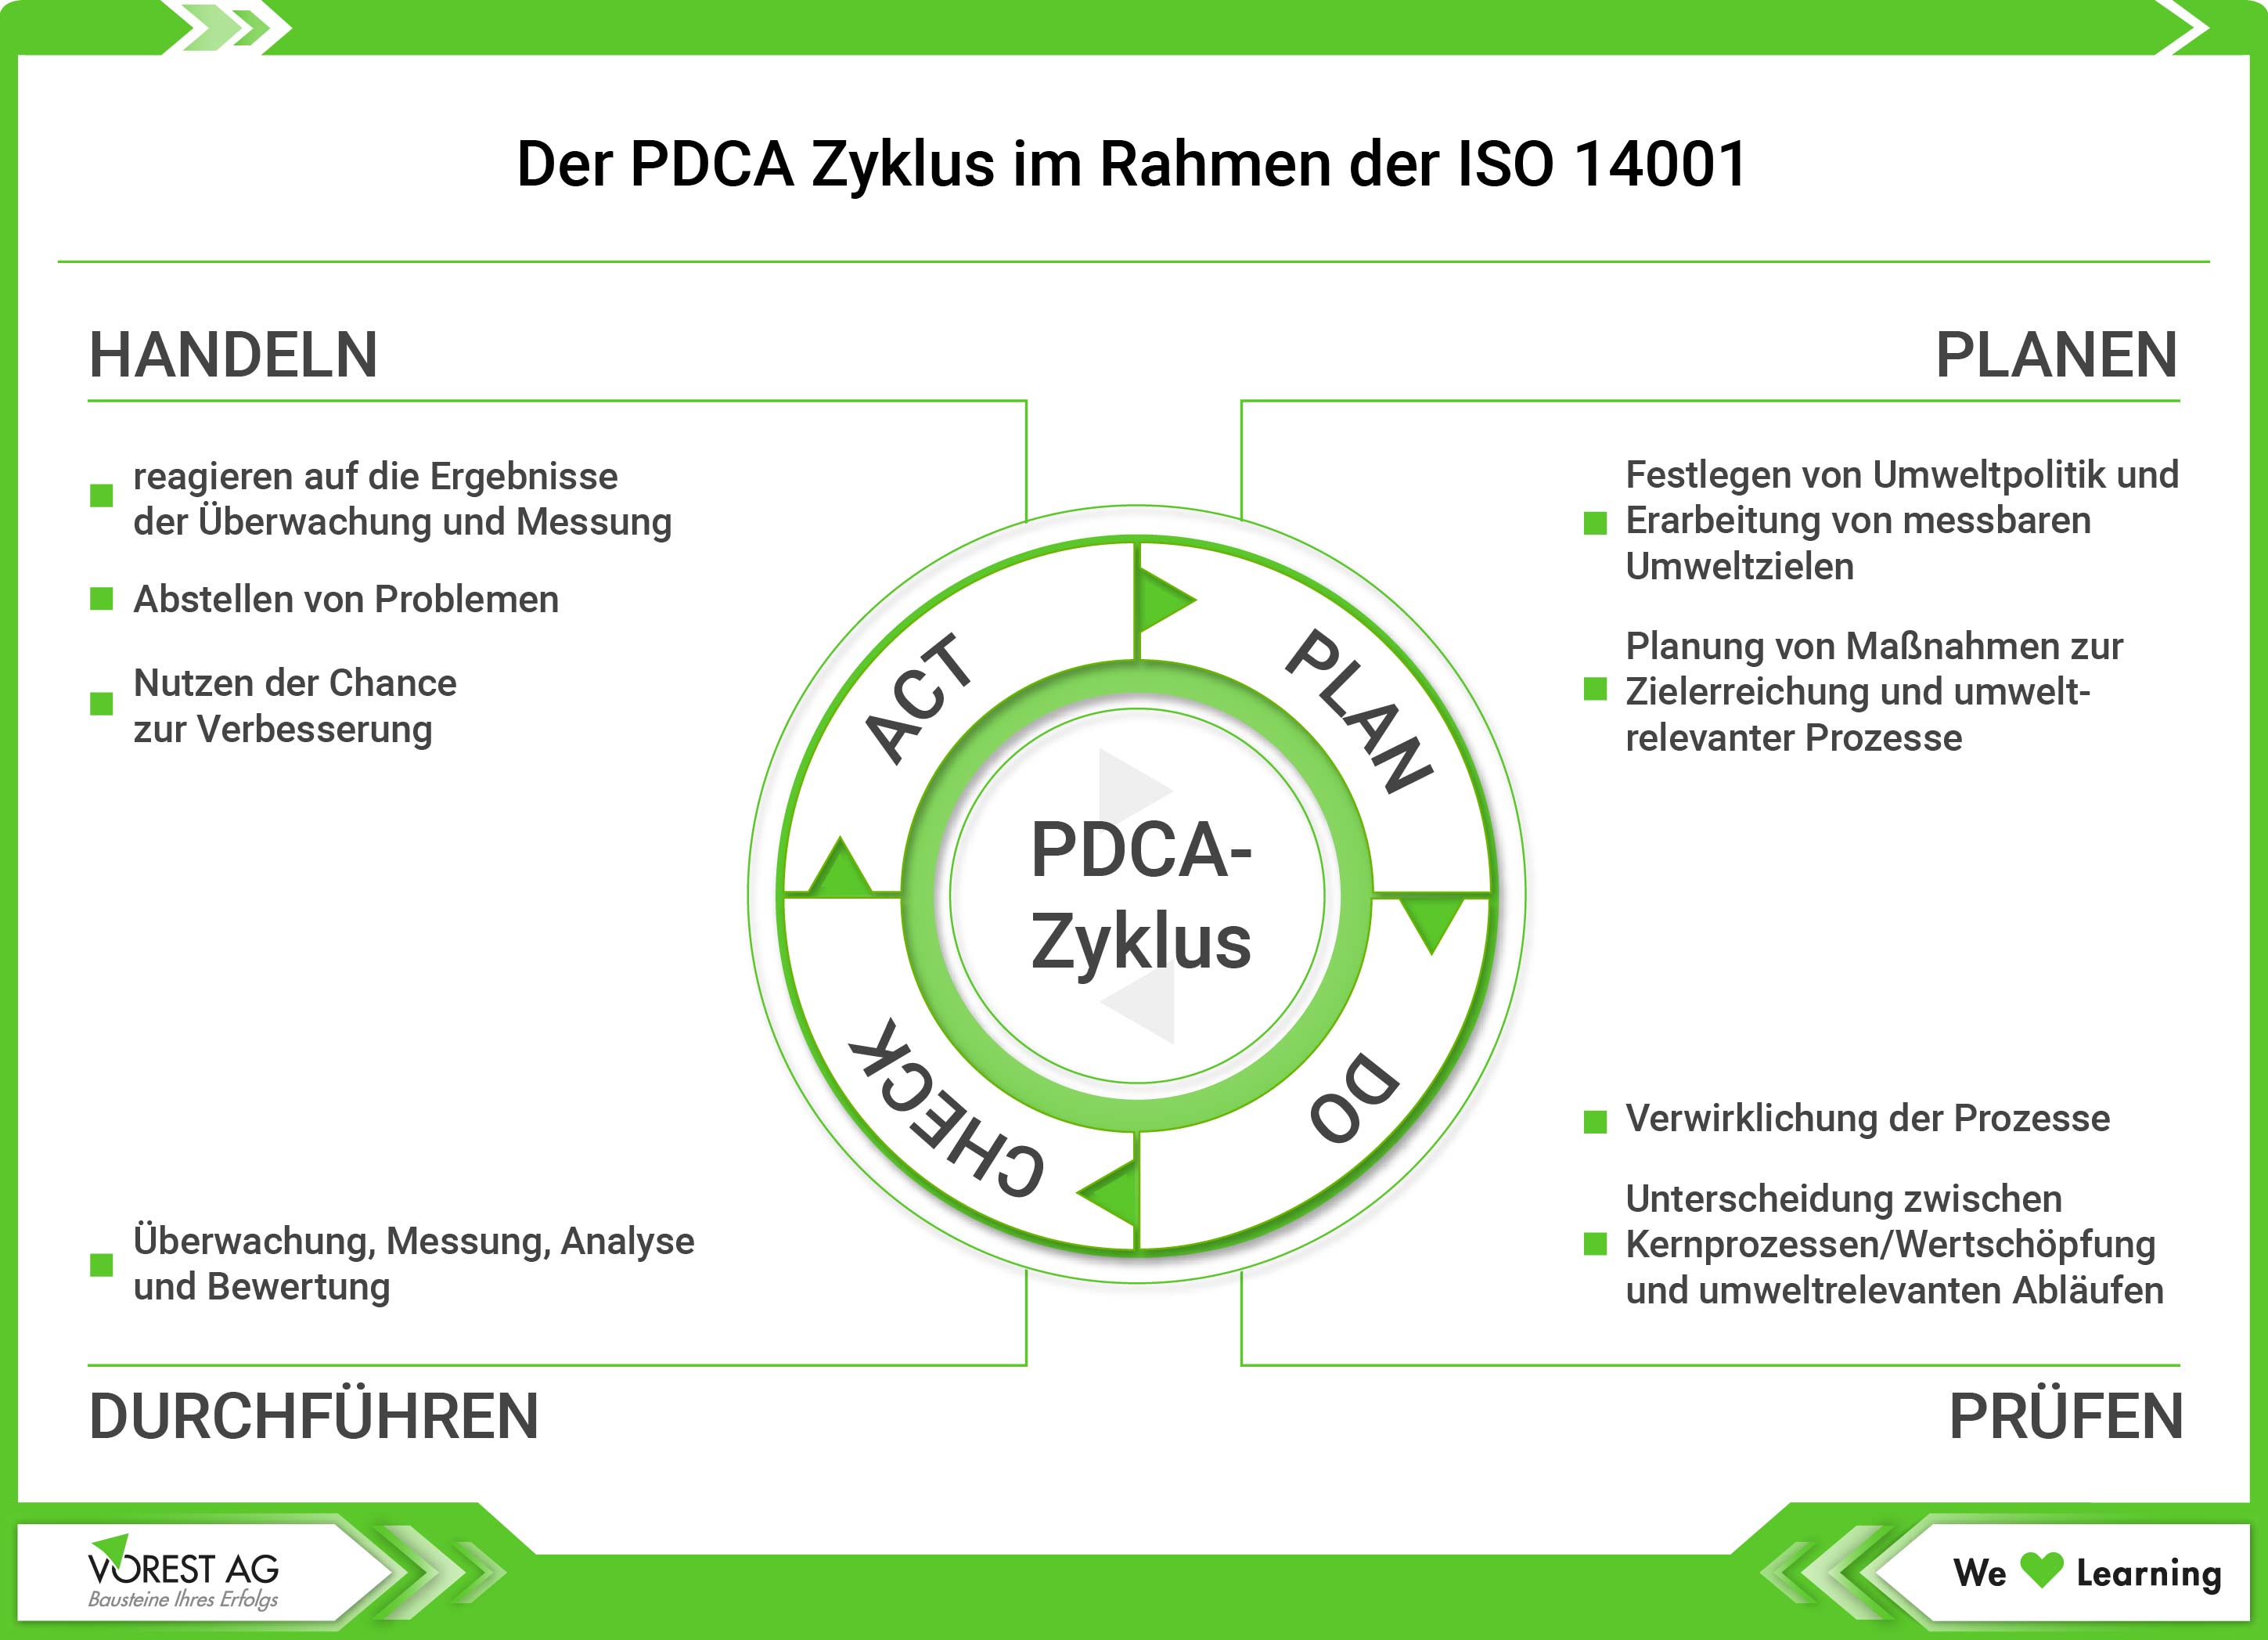 PDCA-Zyklus im Rahmen der ISO 14001